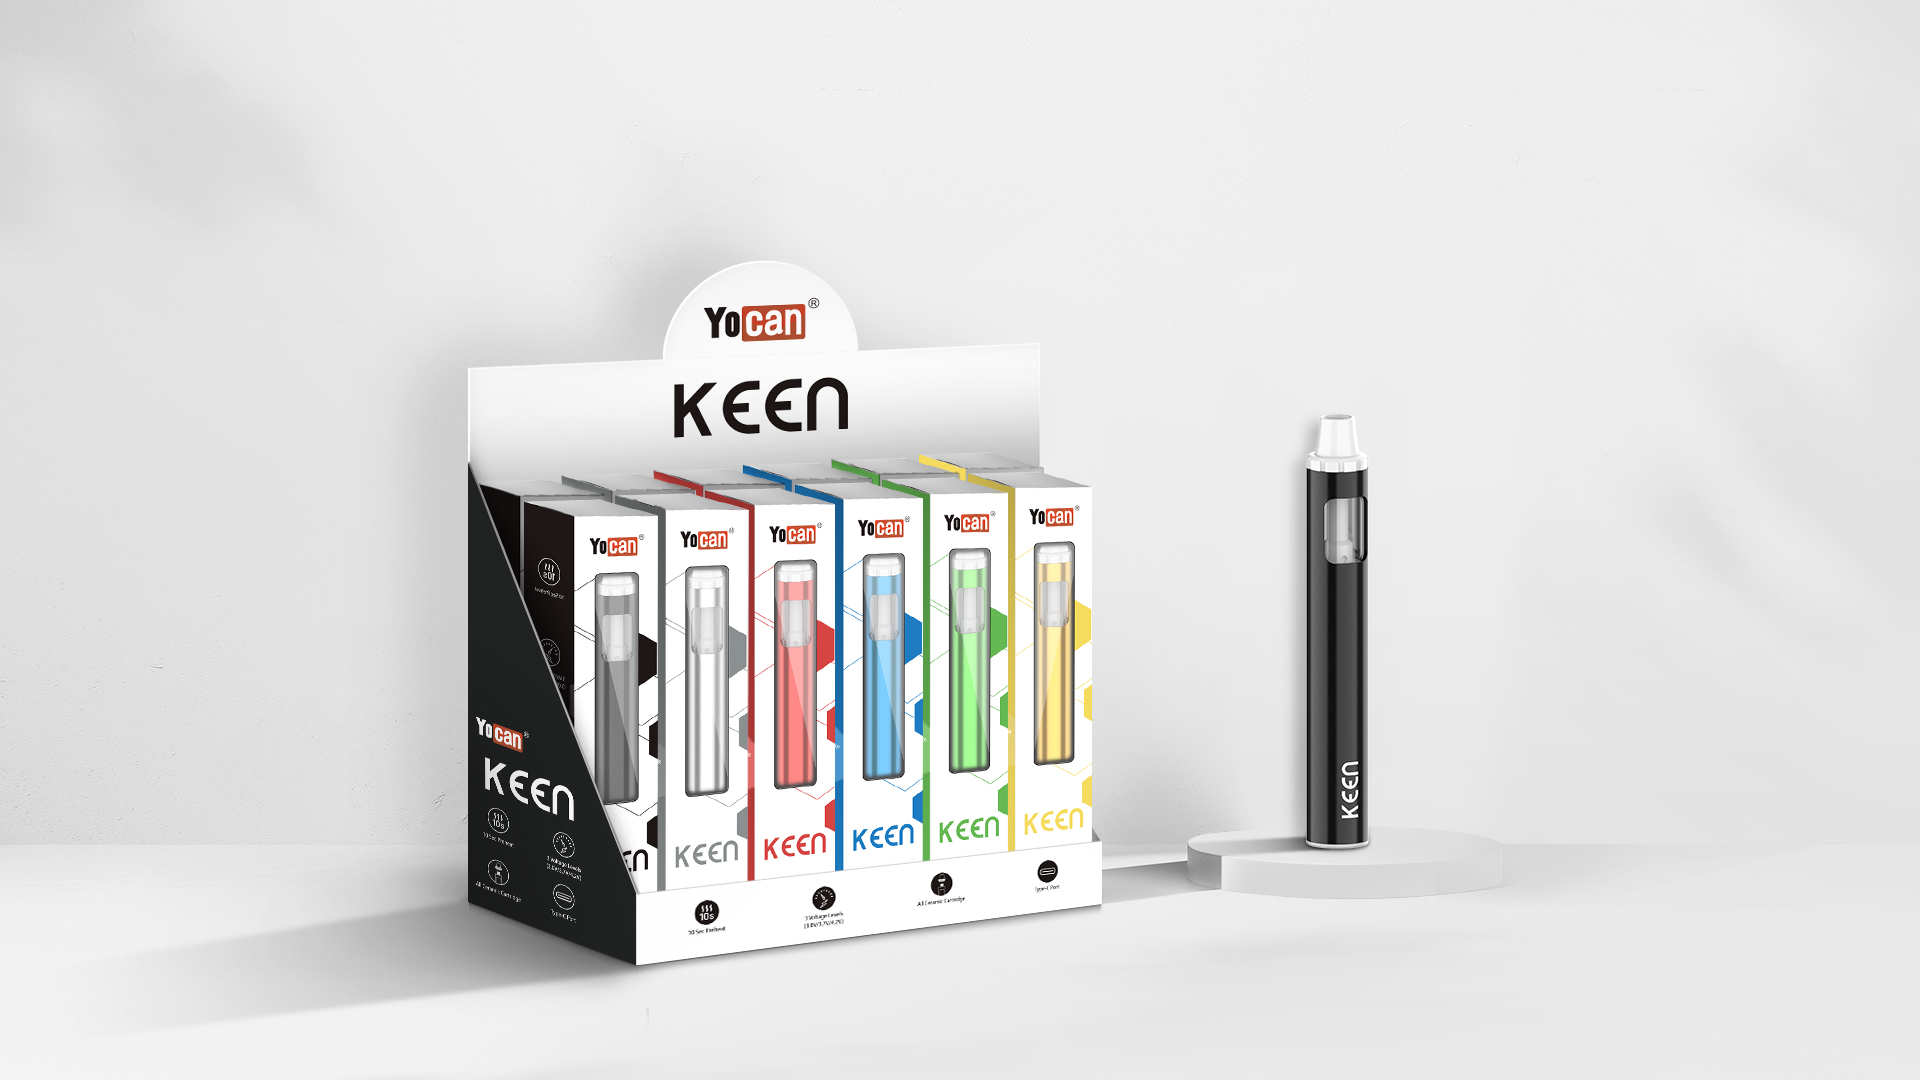 Yocan Keen D8 Disposable Vape Pen package content